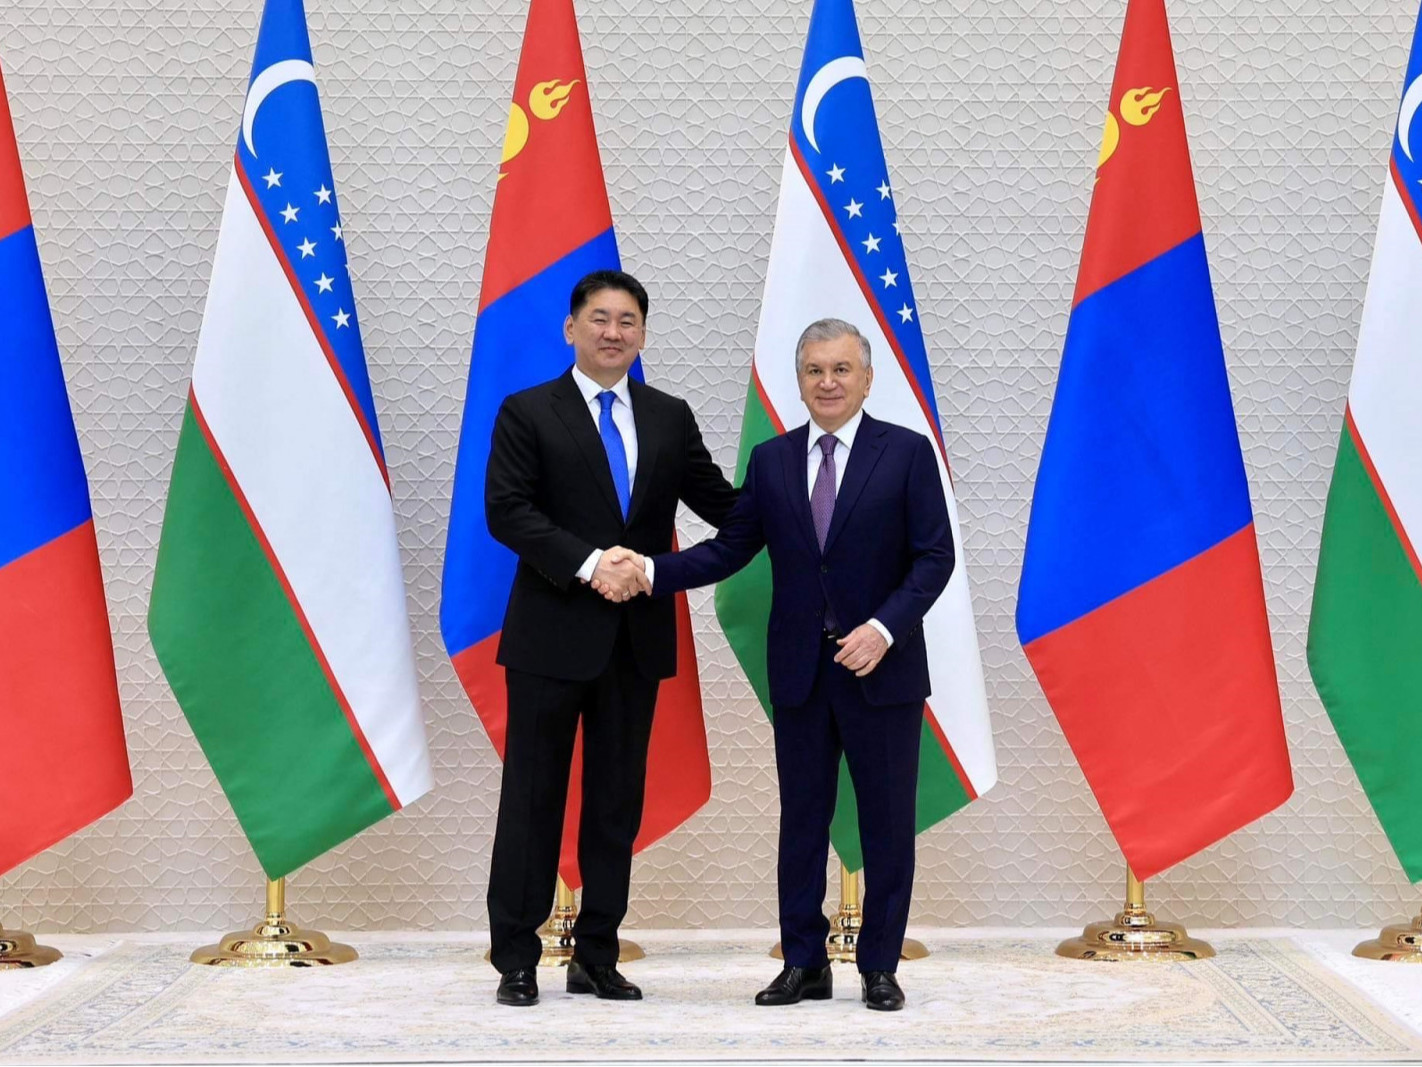  Ерөнхийлөгч У.Хүрэлсүх, Бүгд Найрамдах Узбекистан Улсын Ерөнхийлөгч Ш.Мирзиёев нар албан ёсны хэлэлцээ хийлээ